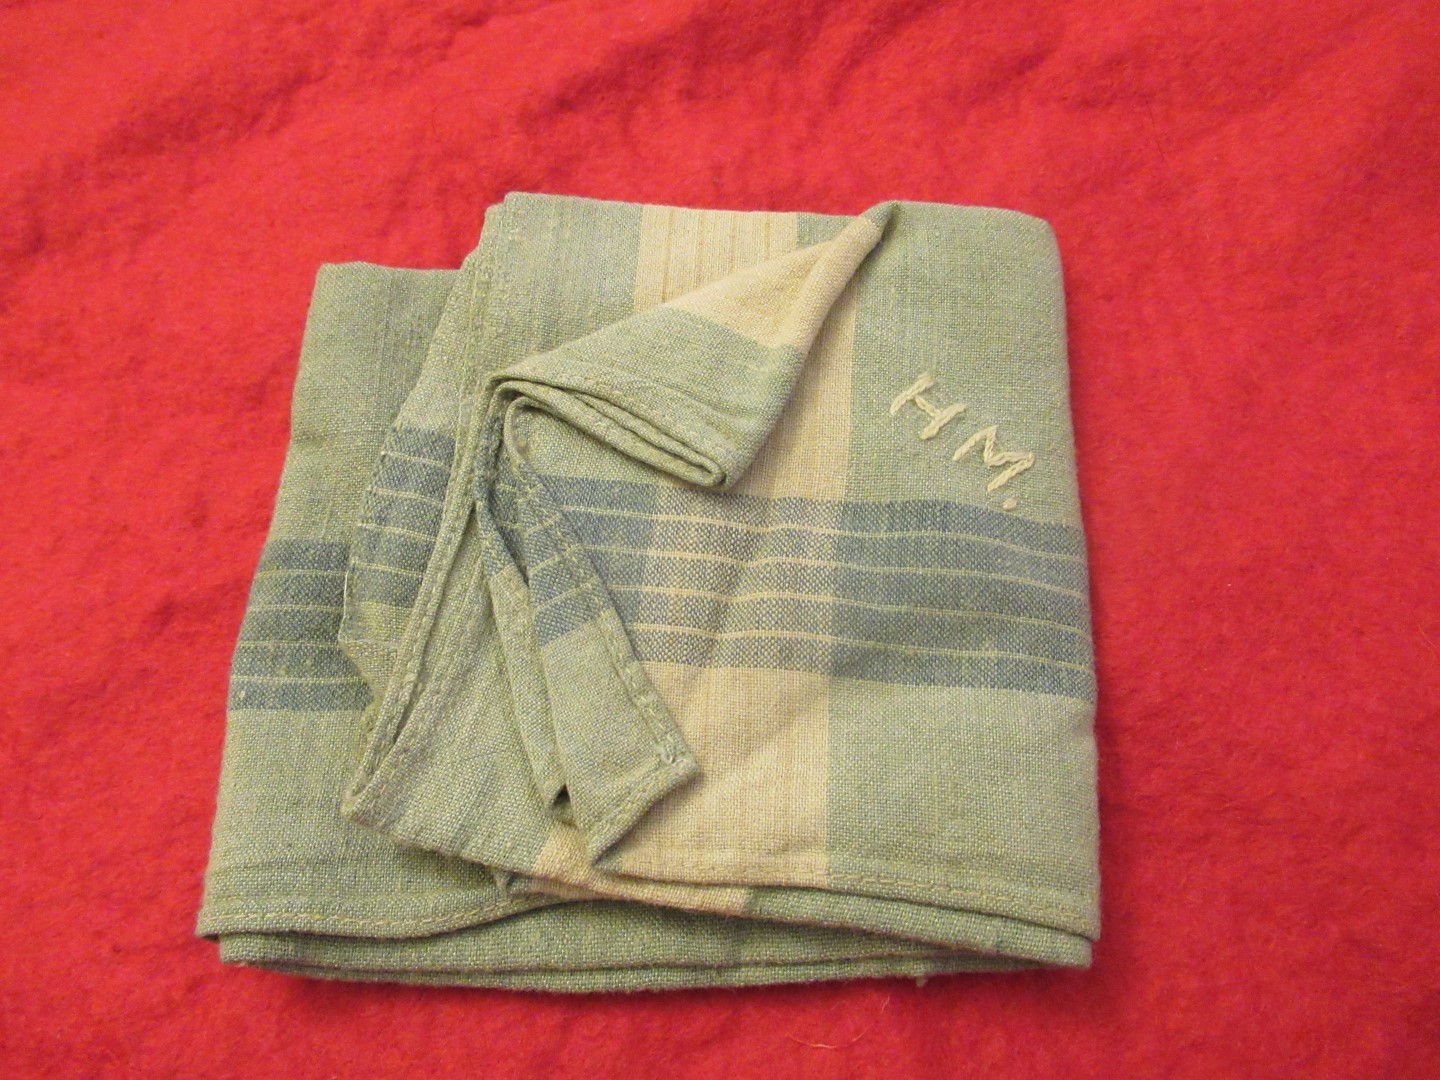 Monogrammed handkerchief